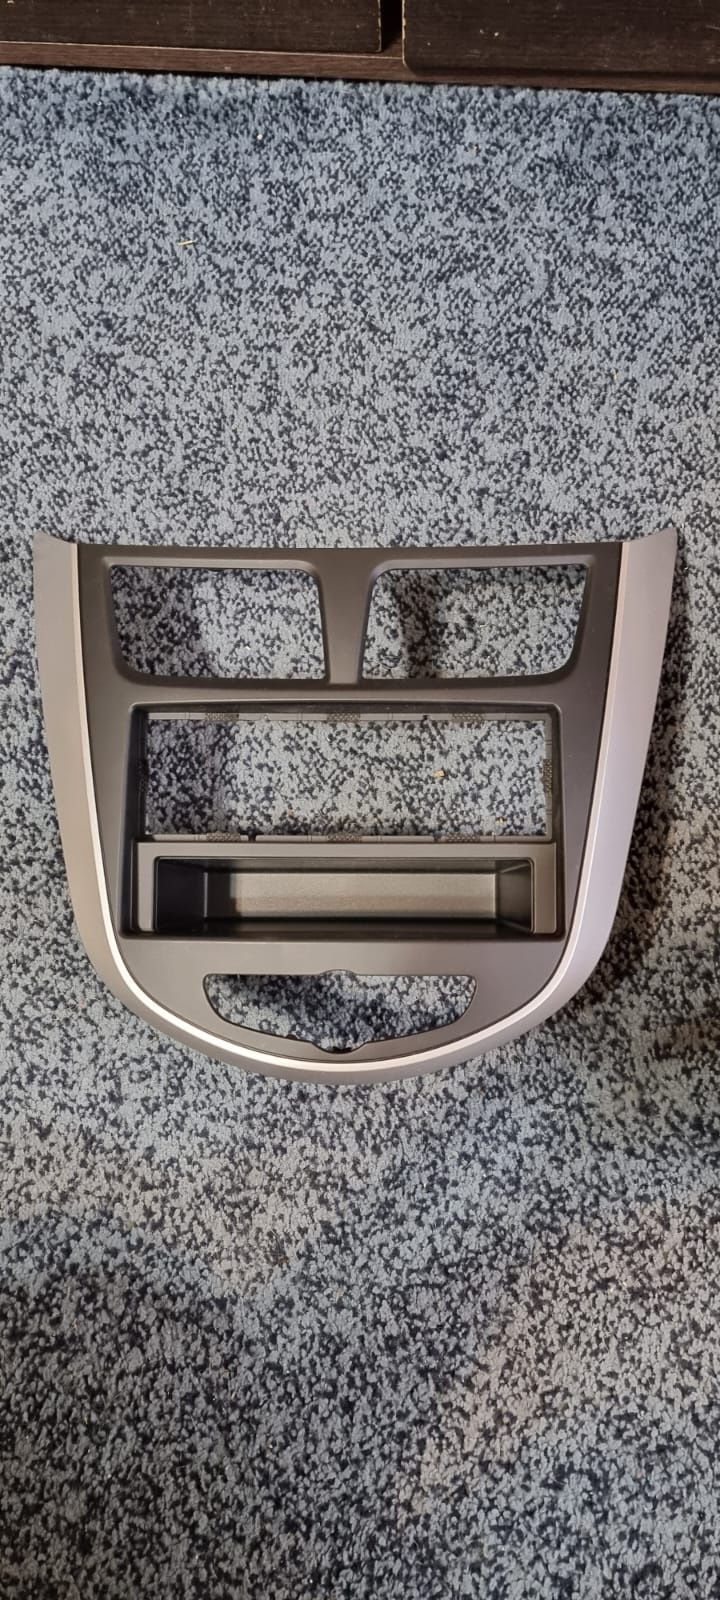 родная рамка Hyundai Accent для магнитолы